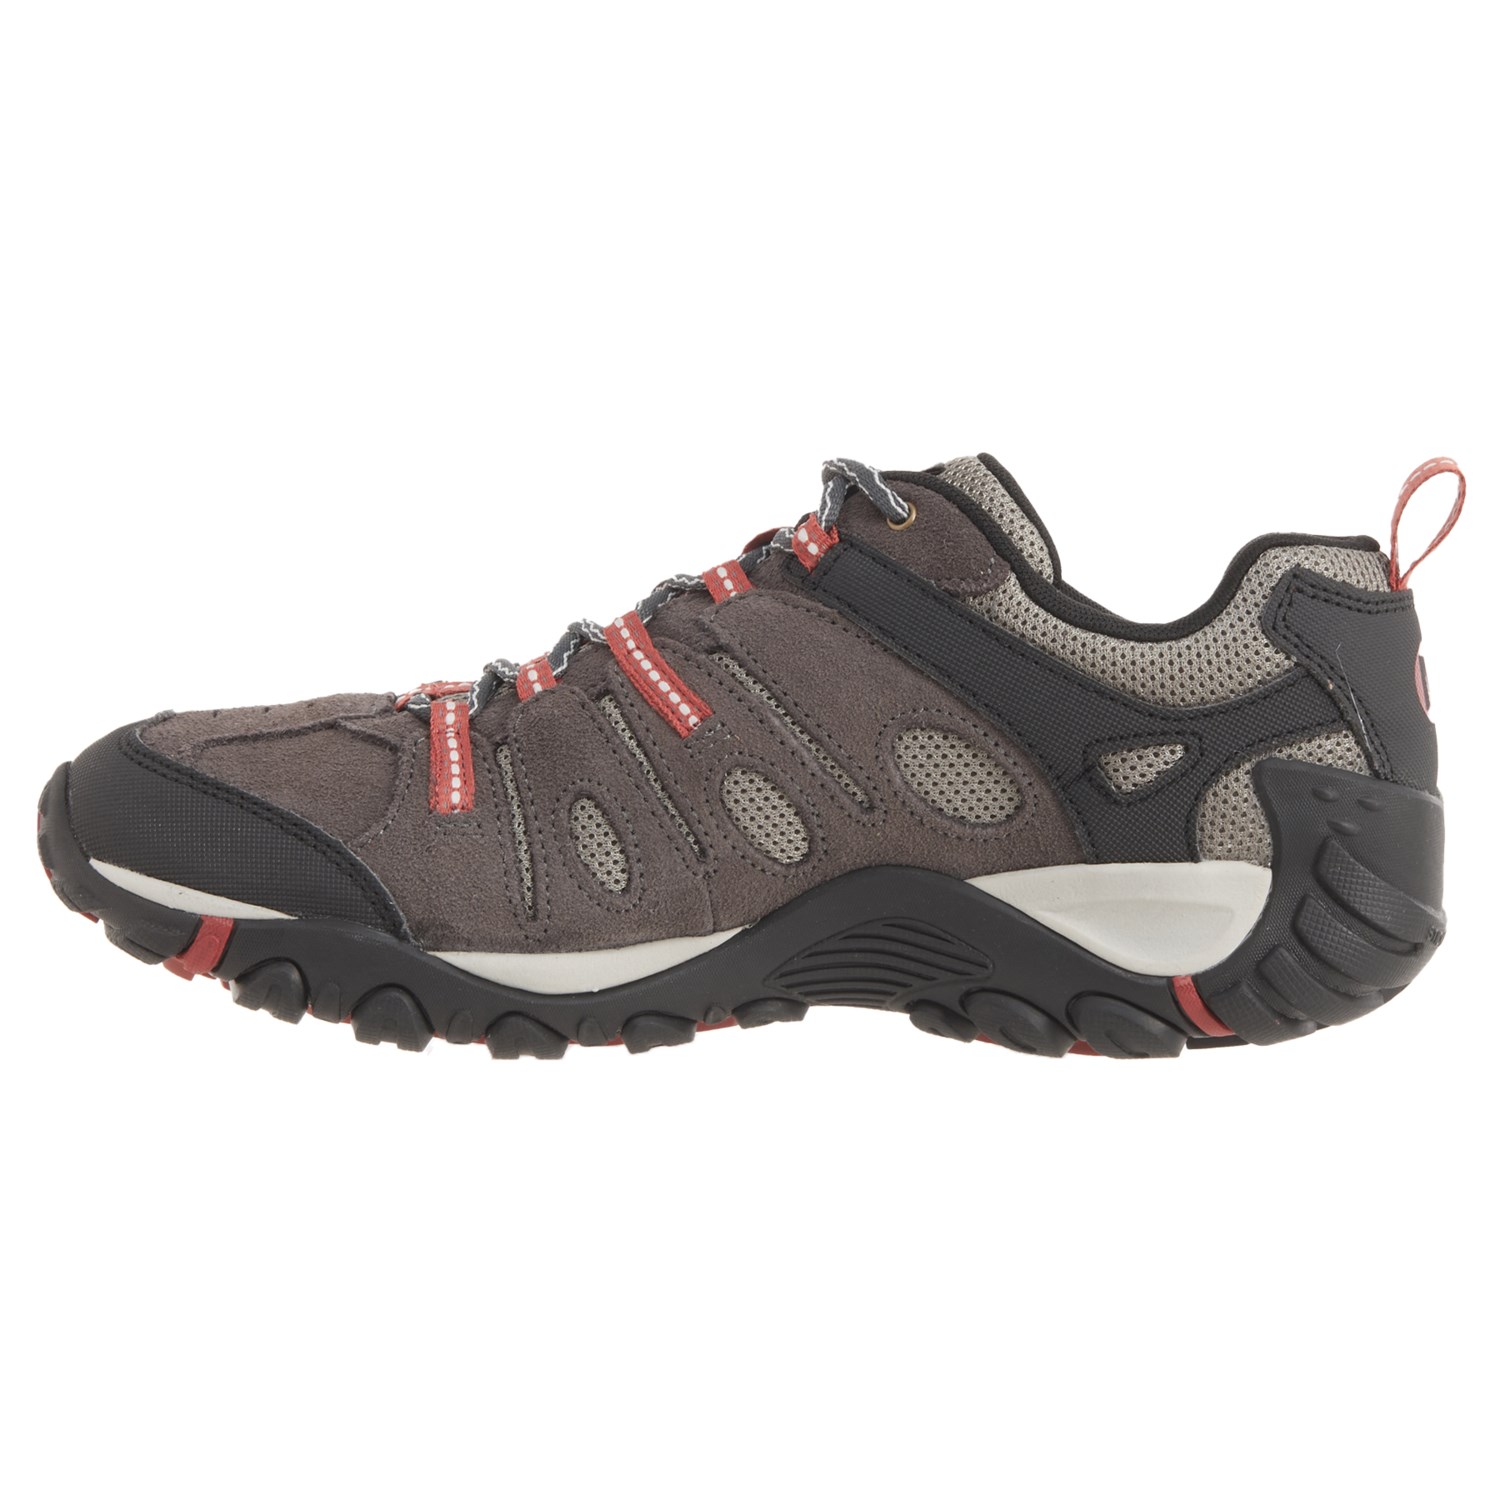 Merrell Crosslander Vent Hiking Shoes (For Men) - Save 25%